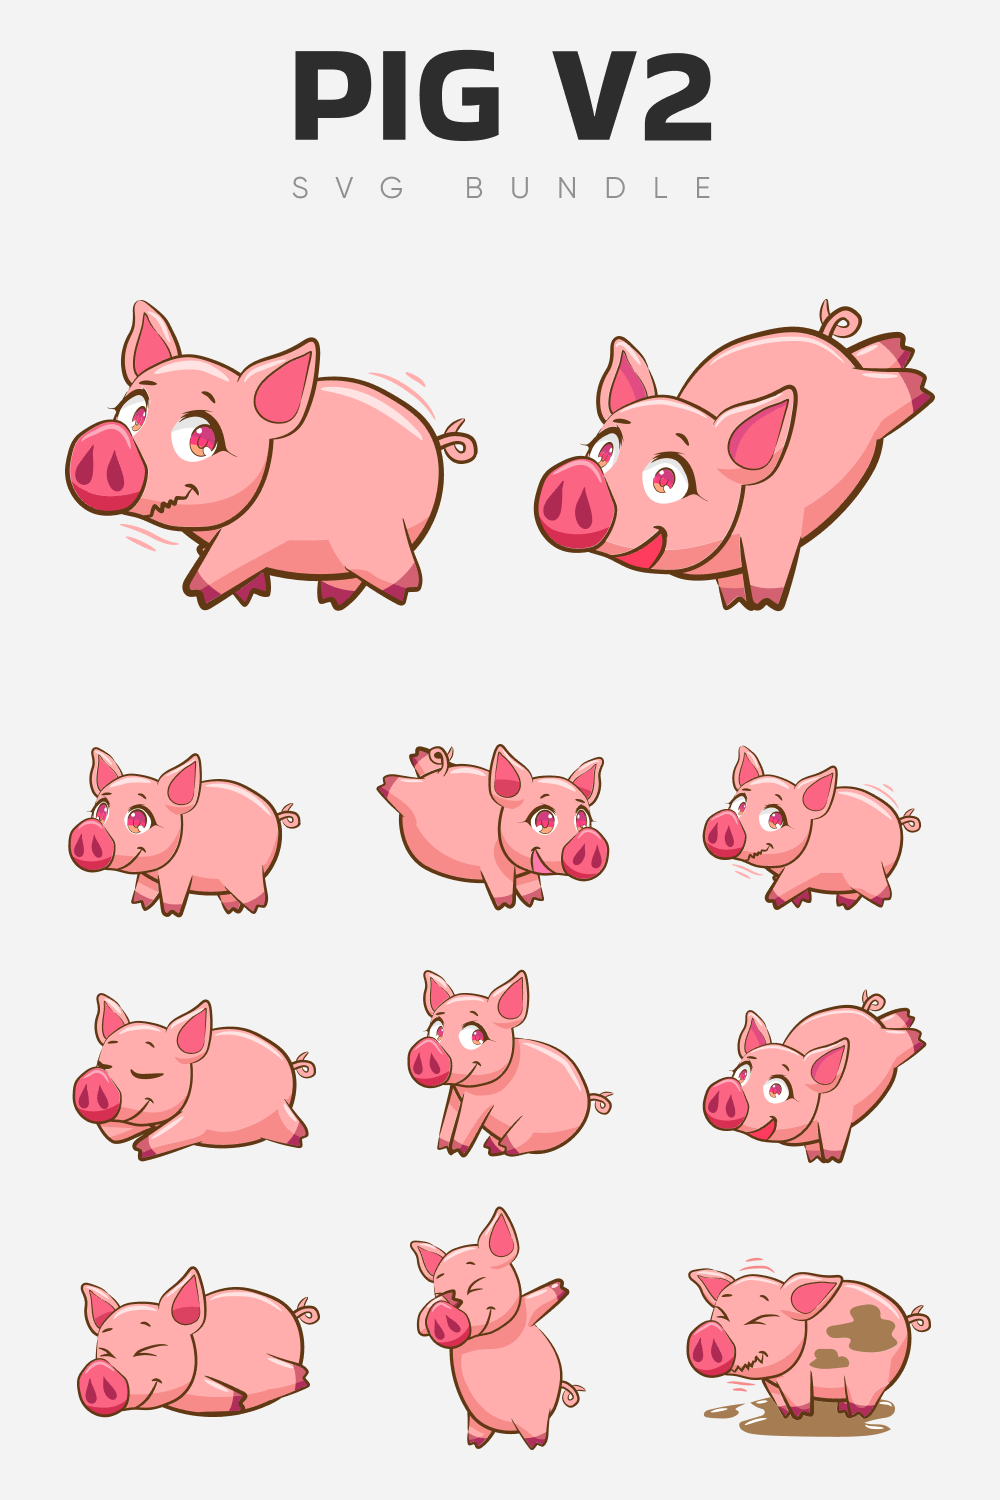 Pig 2 SVG bundle.